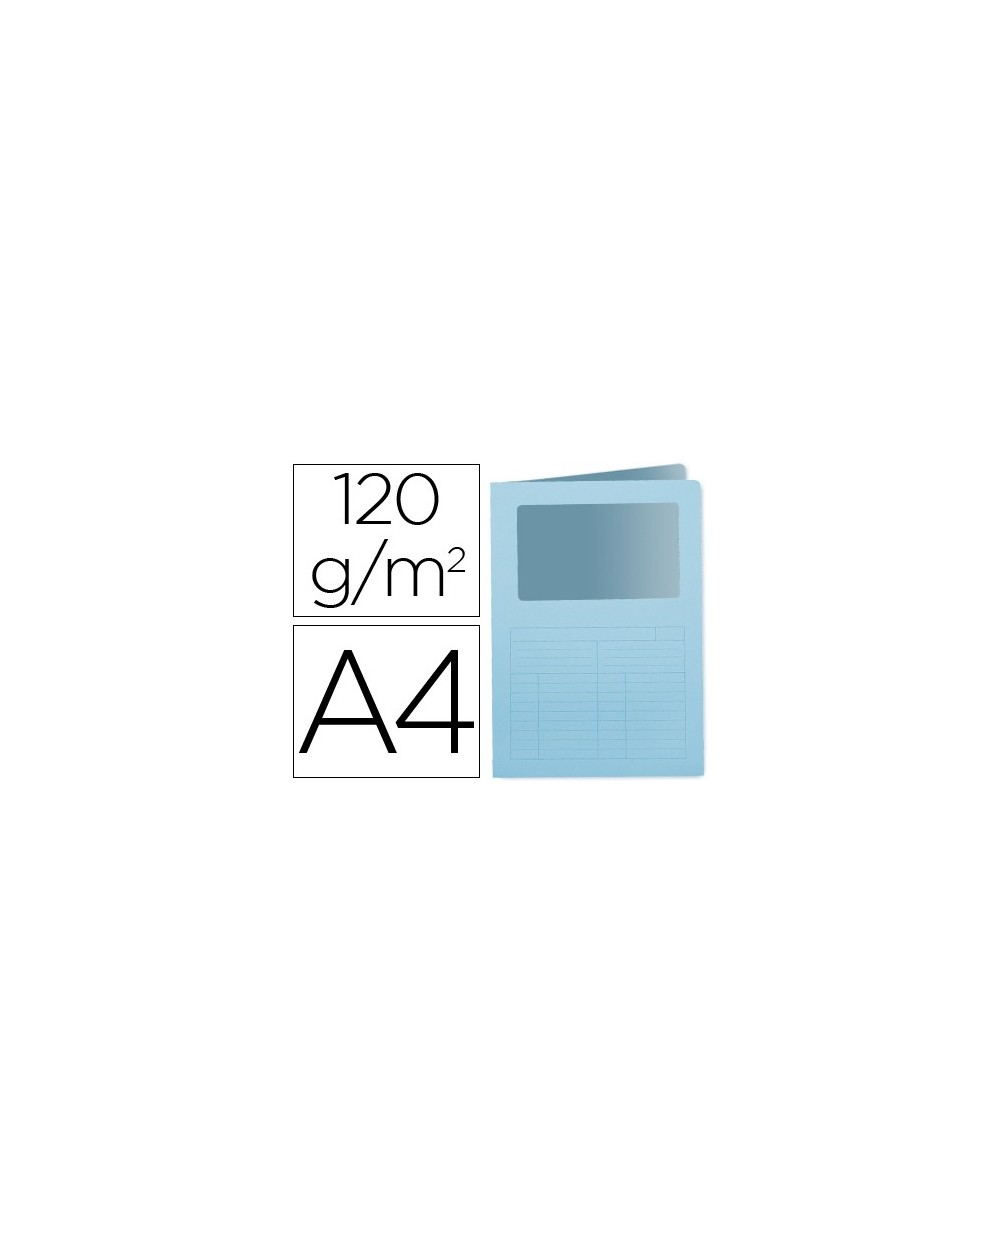 Subcarpeta cartulina q connect din a4 azul con ventana transparente 120 gr